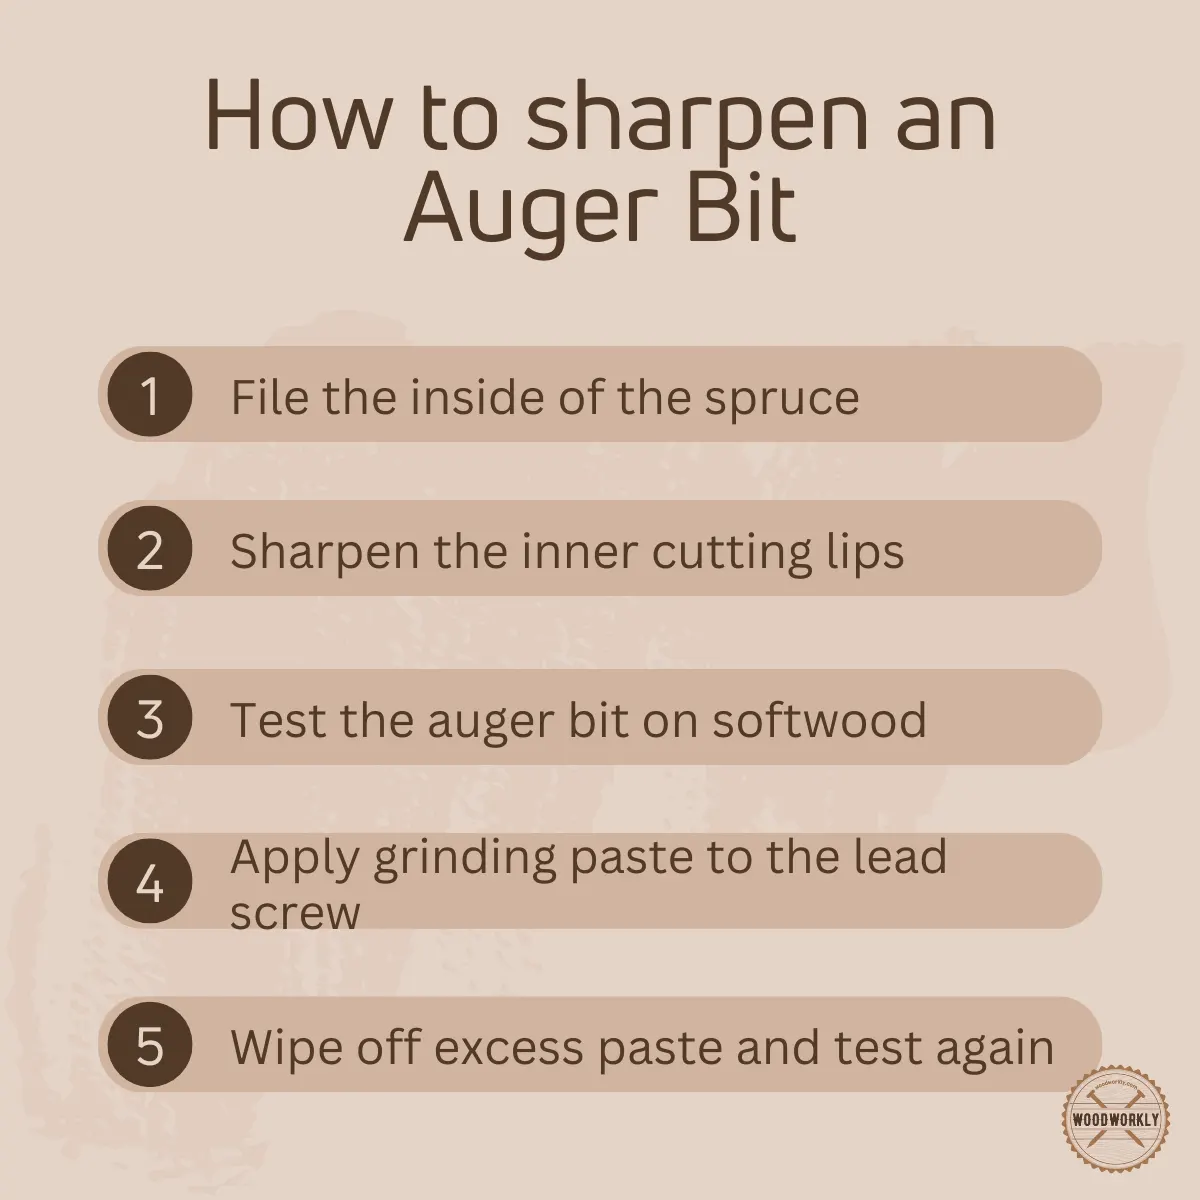 How to sharpen an Auger Bit